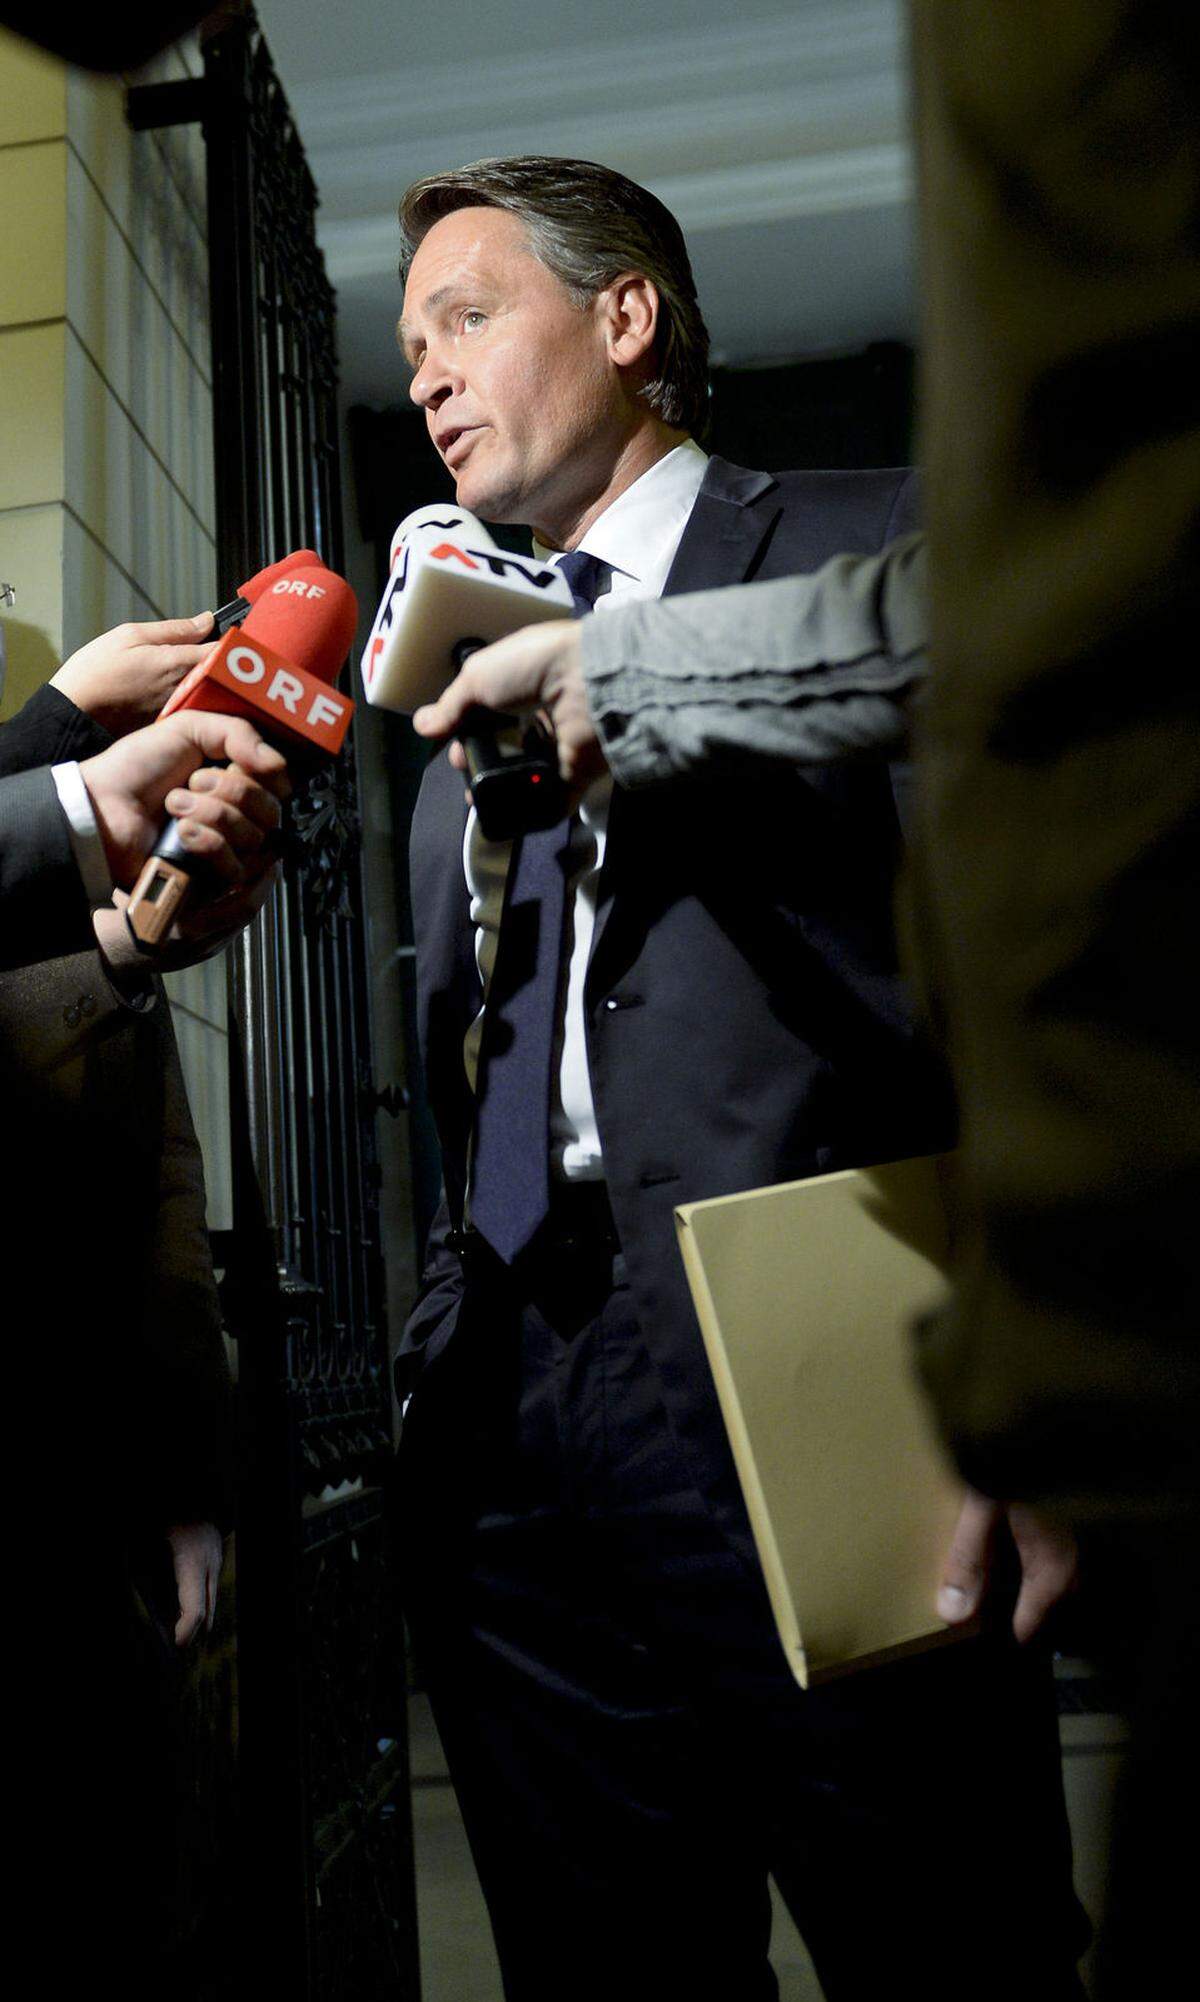 Völlig überraschend eingesetzt wurde kurz vor der Sommerpause des Parlaments in Jahr 2009 ein U-Ausschuss zu diversen Spitzel- und Spionagevorwürfen. Unmittelbarer Anlass waren vom Parlament nicht genehmigte Ermittlungen der Justiz gegen den BZÖ-Abgeordneten Peter Westenthaler (Bild) sowie der Vorwurf der FPÖ, von den Grünen bespitzelt worden zu sein. Bekannt wurde auch, dass die Justiz eine Anzeige gegen Ex-Innenminister Ernst Strasser (ÖVP) bis zur Verjährung "übersehen" hatte. Von SPÖ und ÖVP wurde der Ausschuss nach nur fünf Monaten mittels Fristsetzung beendet, mehrere Affären (wie die im Eiltempo verfügte Einbürgerung des kasachischen Botschafters Rakhat Alijew) blieben ungeklärt.